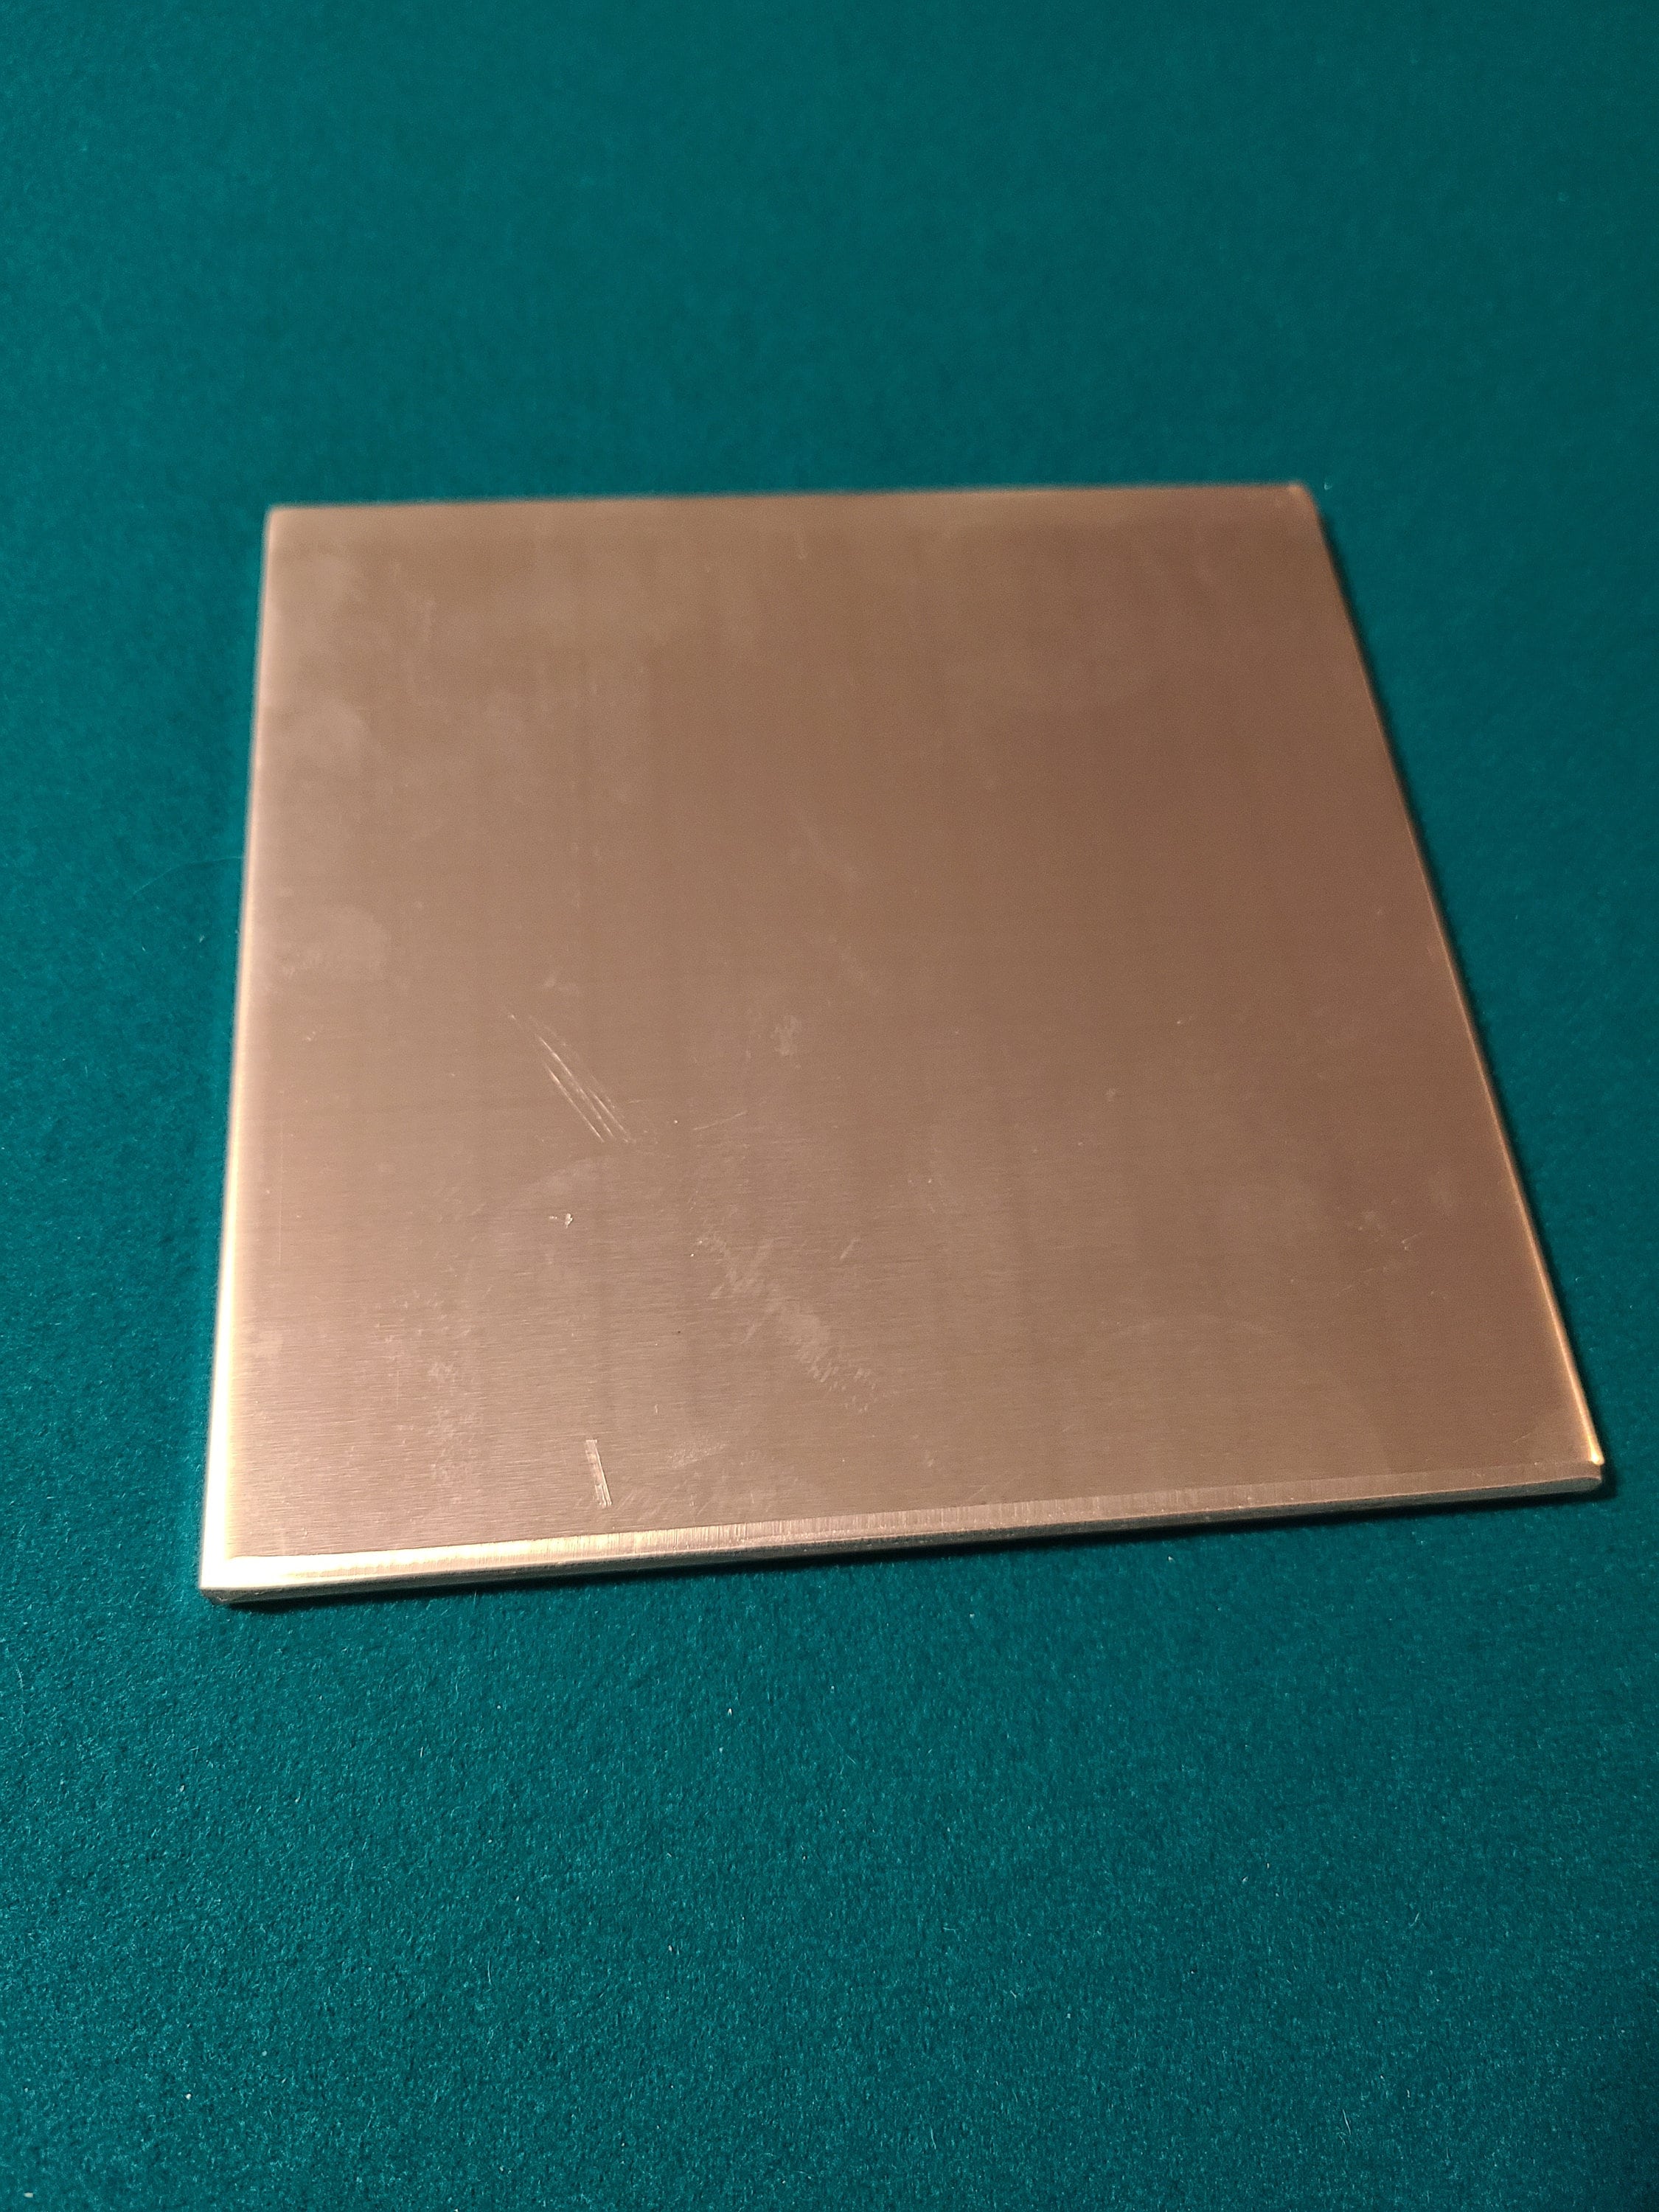 New 1/8 .125 Aluminum Sheet Plate 4 x 4 5052 H32